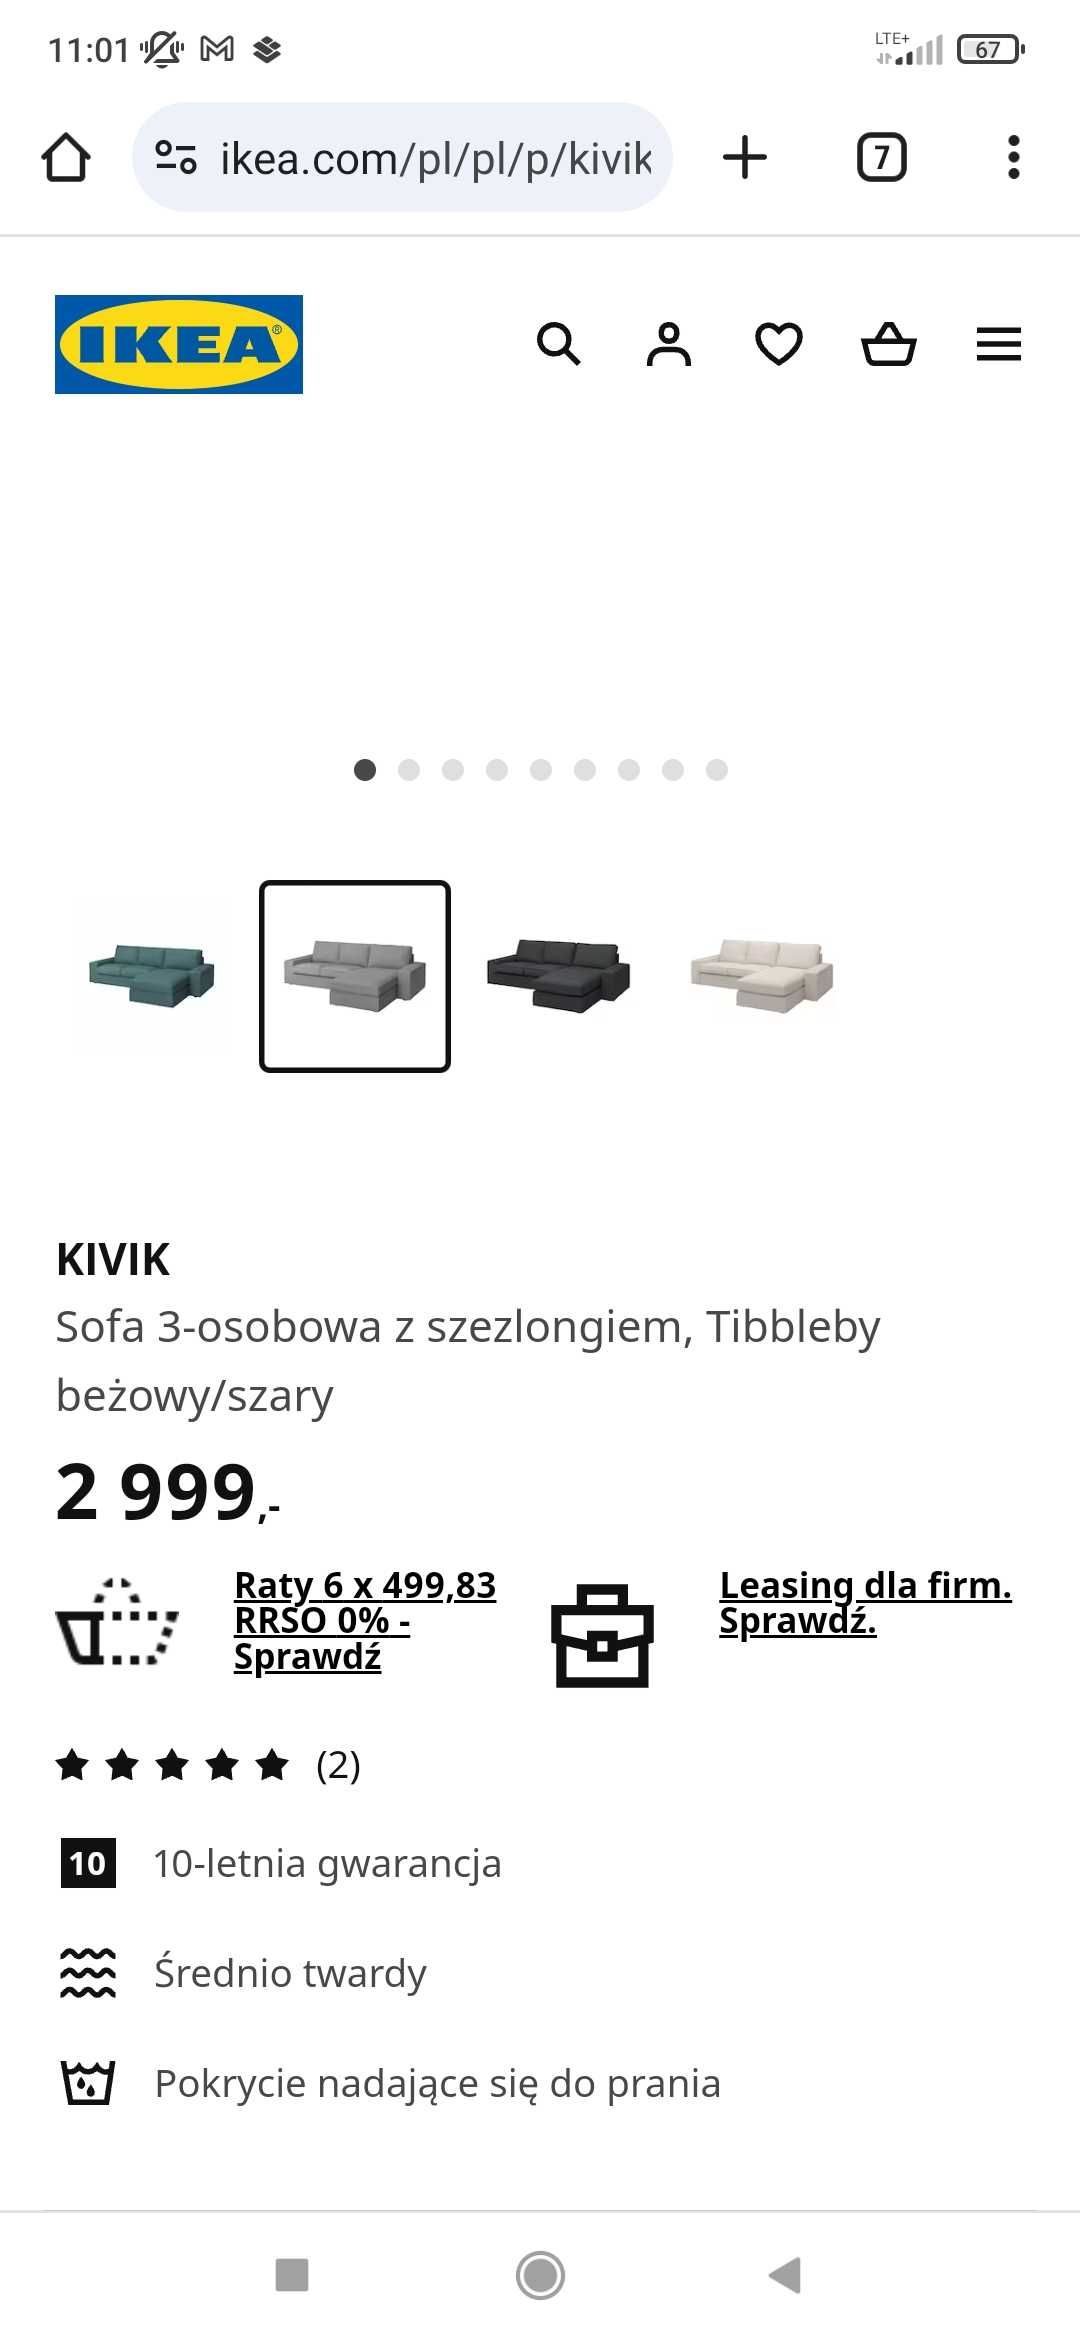 Sofa Kivik IKEA 3-osobowa z szezlągiem